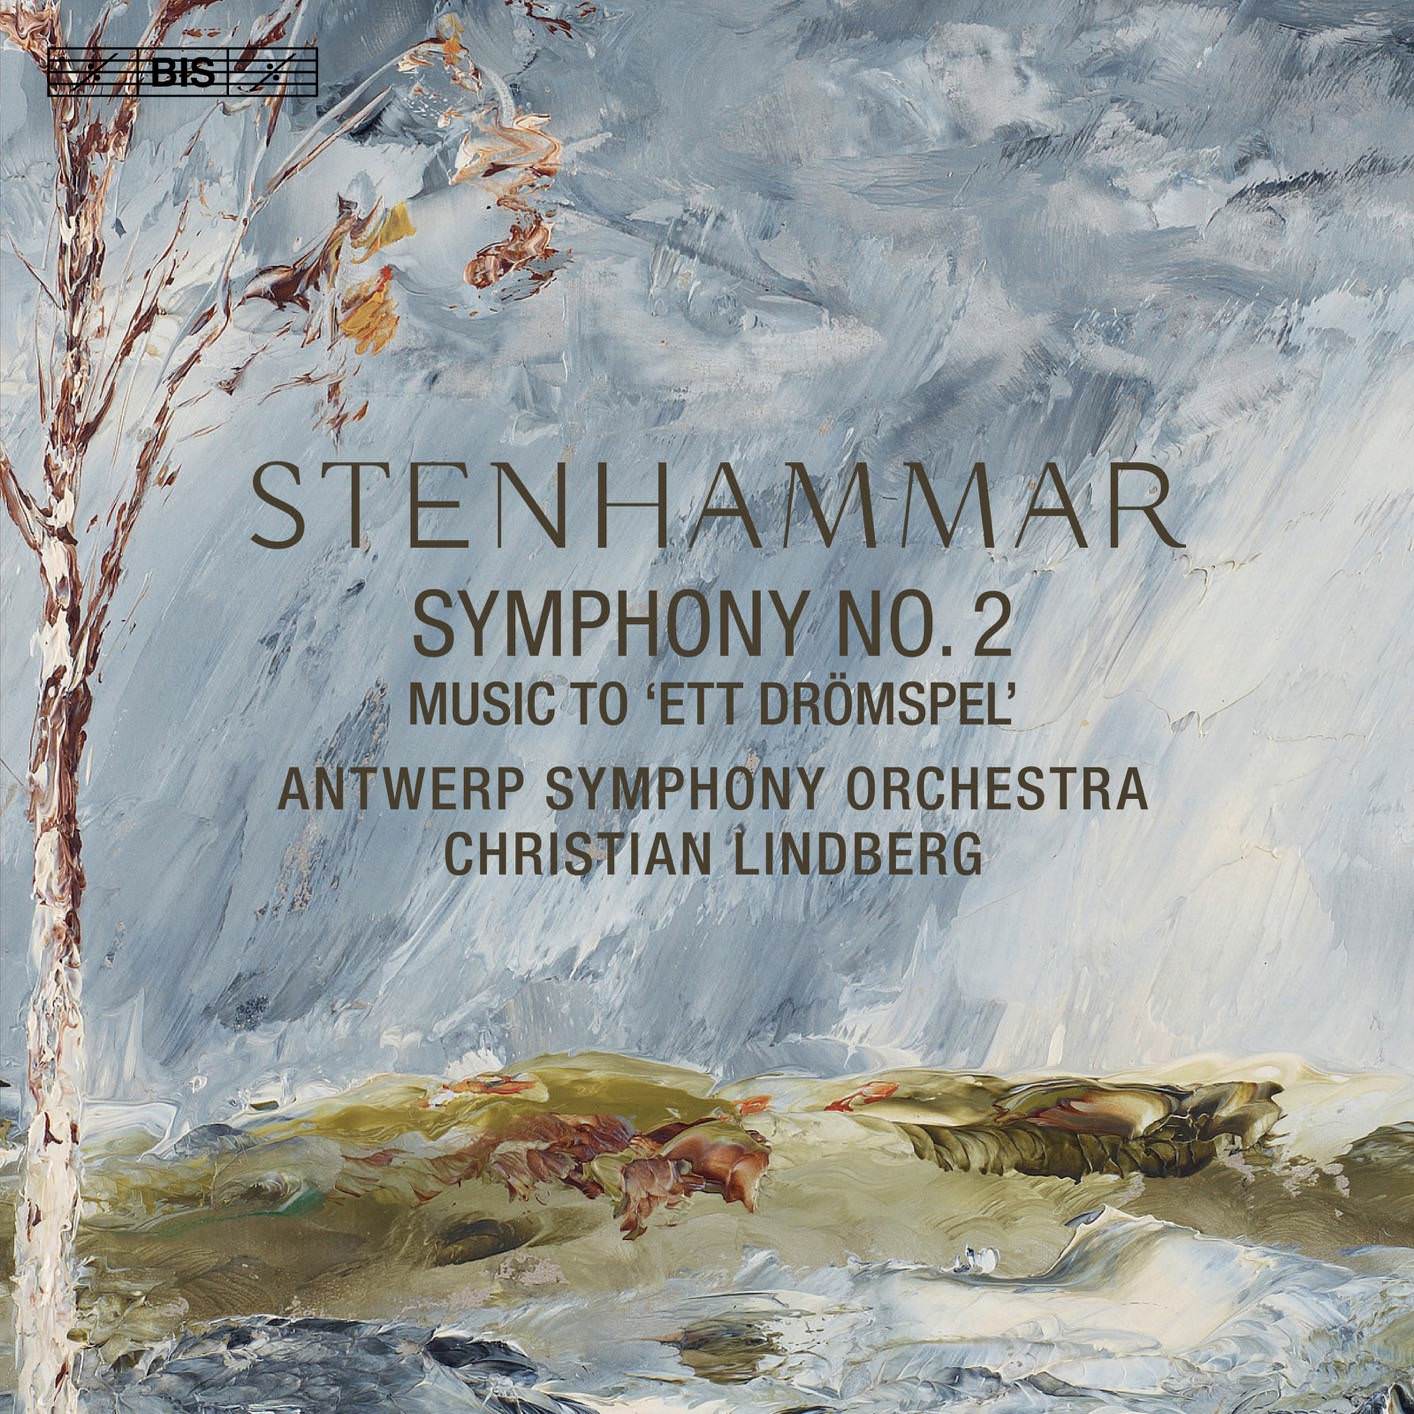 Antwerp Symphony Orchestra & Christian Lindberg - Stenhammar: Symphony No. 2 & Ett dromspel (2018) [FLAC 24bit/96kHz]